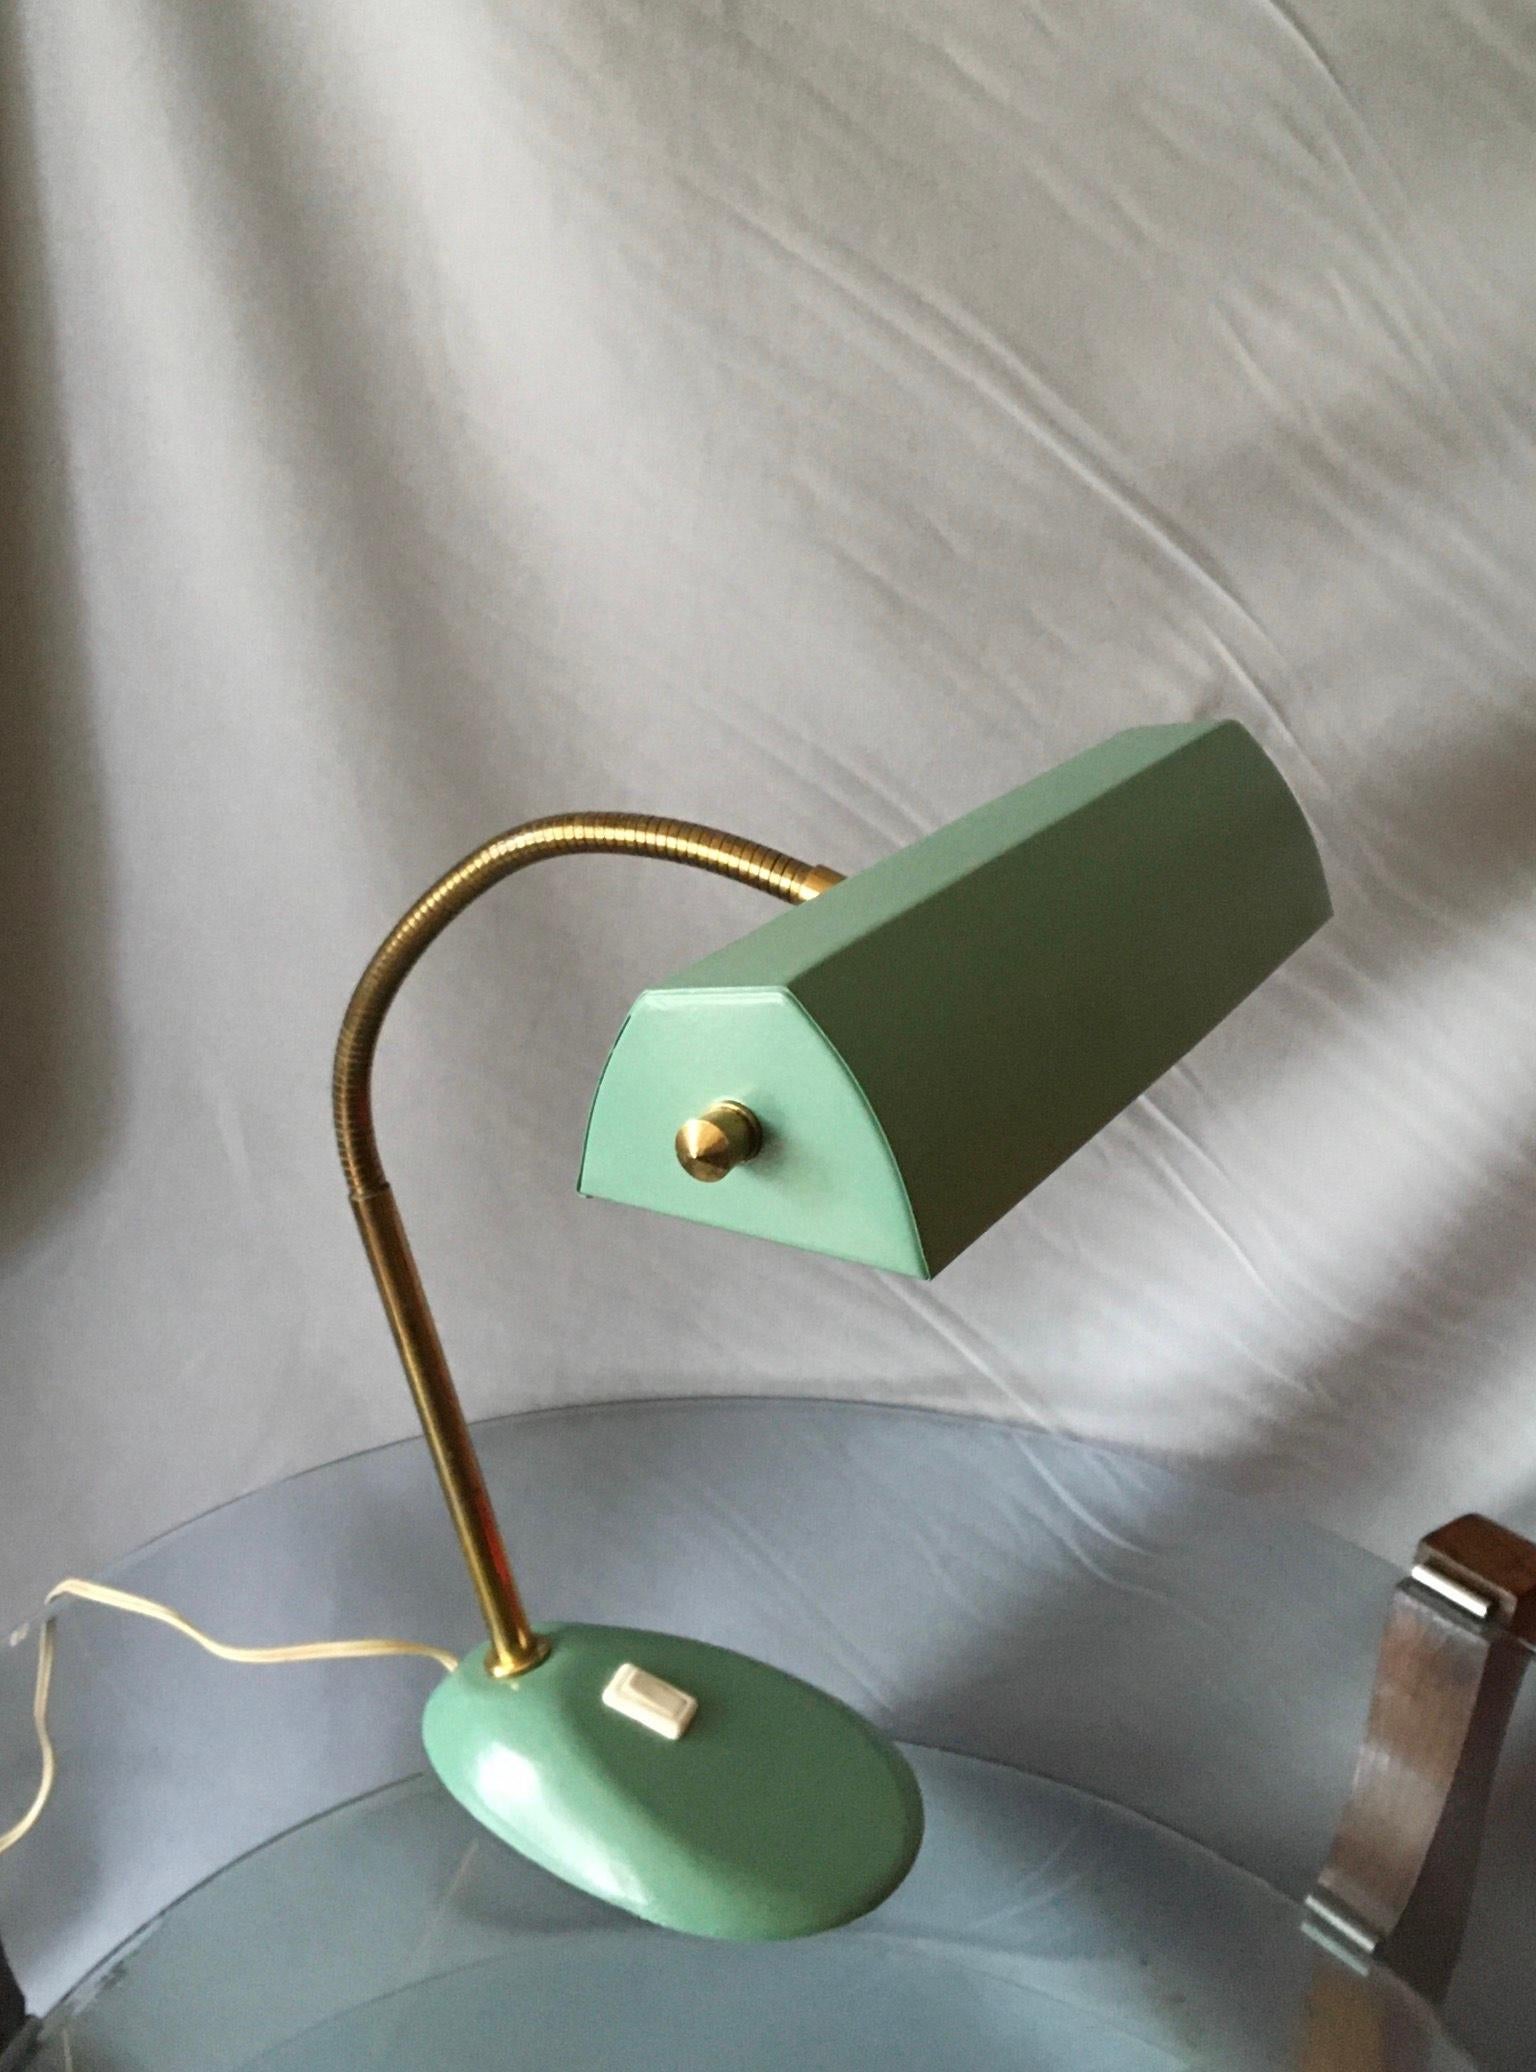 Schönes französisches Design Mitte der 50er Jahre Lampe lackiert celadon grün ( surf green ).
Der multidirektionale Reflektor ist auf einem flexiblen Messingarm montiert, der auf einem gusseisernen Sockel befestigt ist, um größtmögliche Stabilität